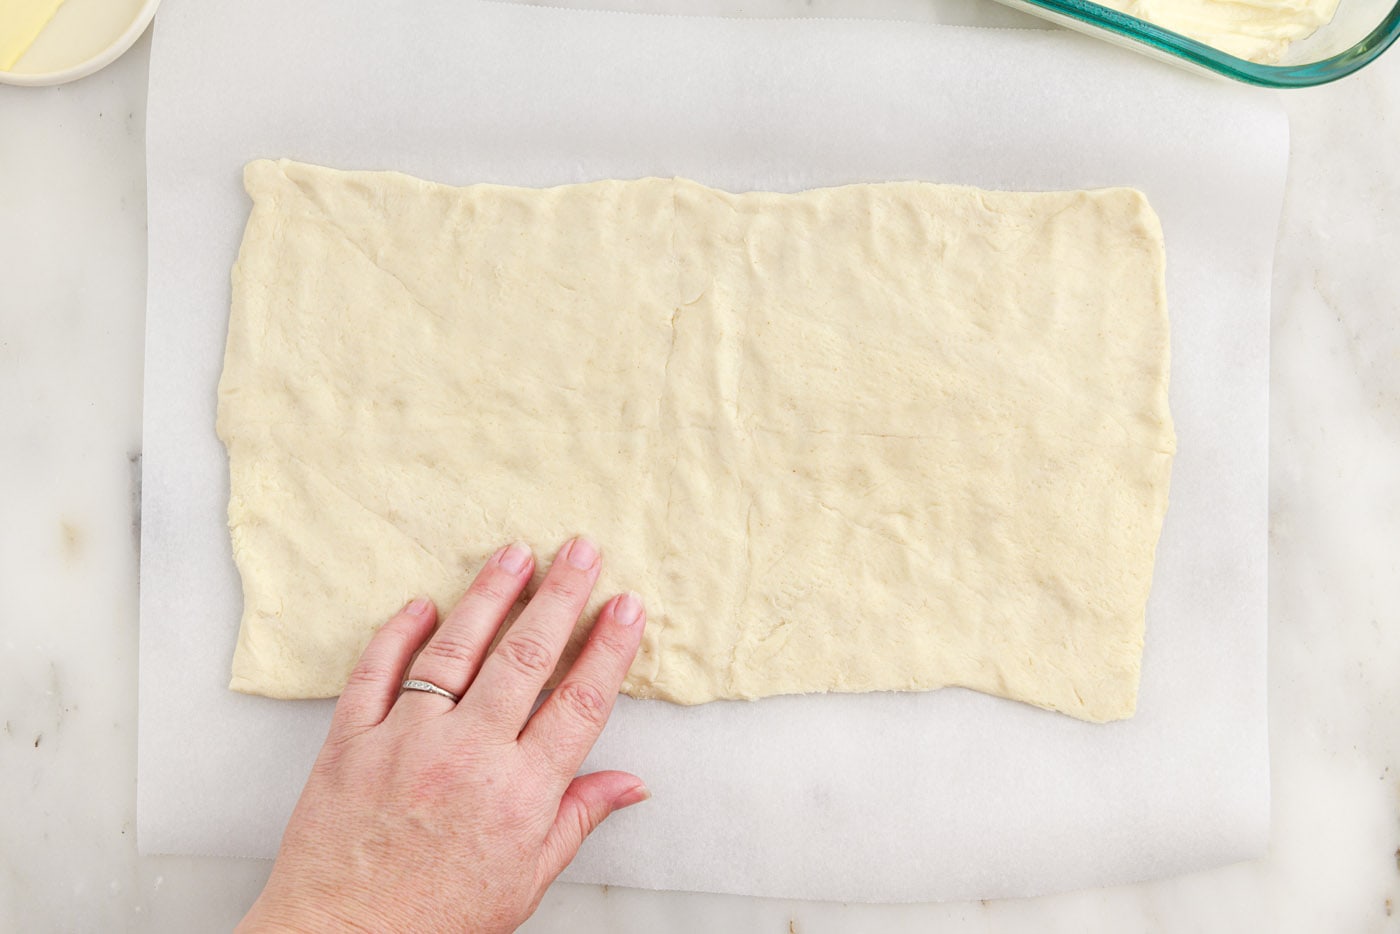 crescent dough sheet on parchment paper